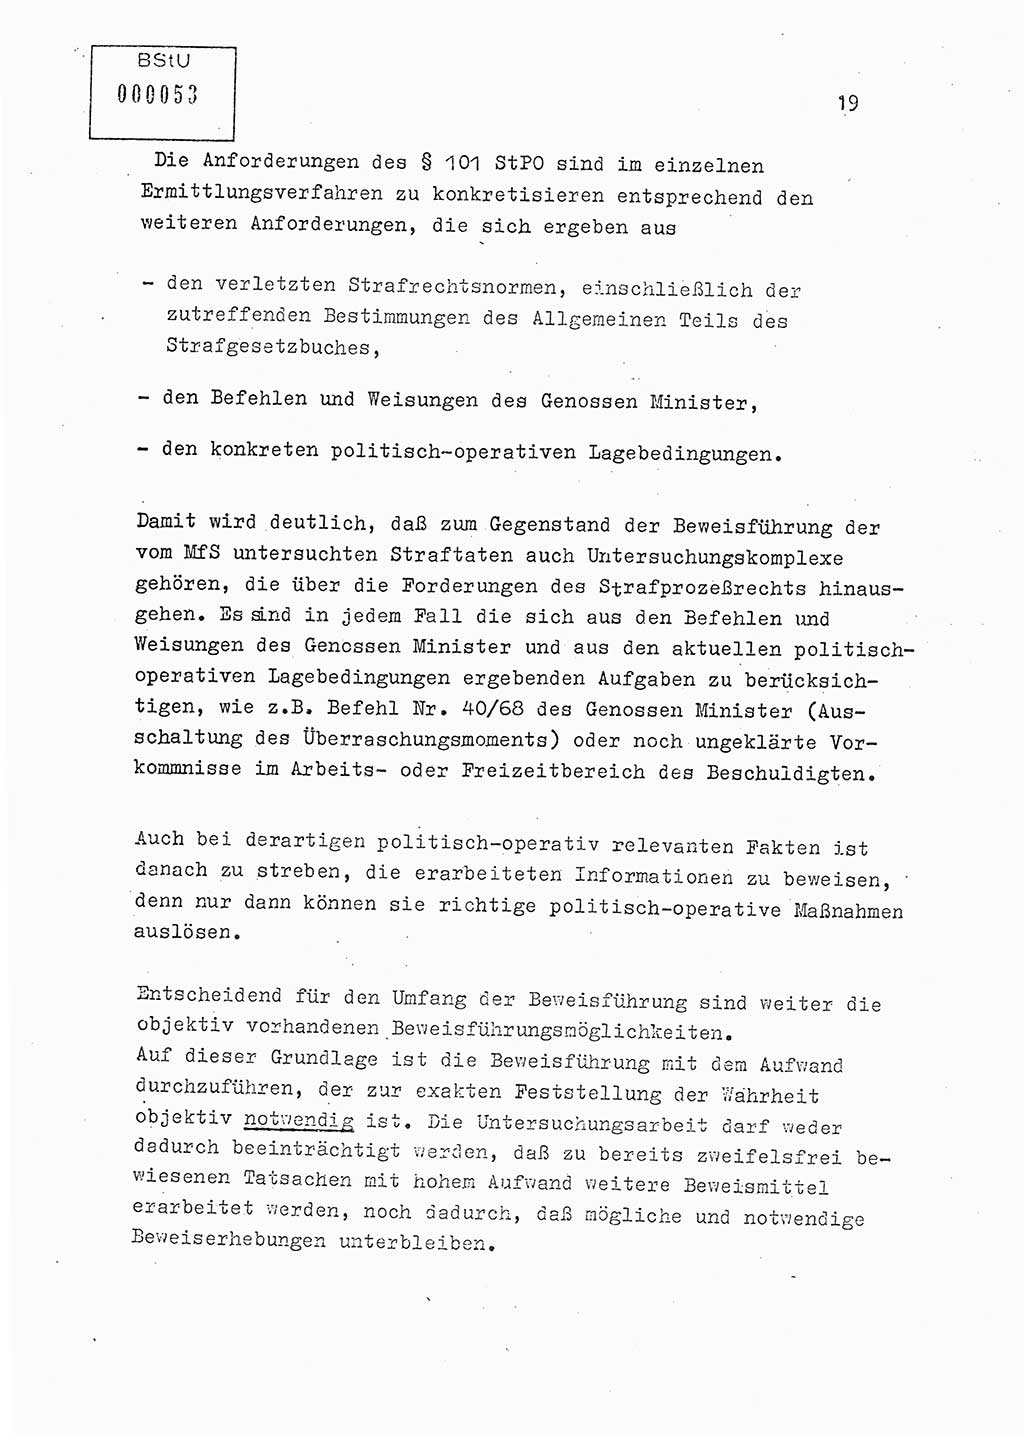 Lektion Ministerium für Staatssicherheit (MfS) [Deutsche Demokratische Republik (DDR)], Hauptabteilung (HA) Ⅸ, Berlin 1979, Seite 19 (Lekt. Bew.-Fü. EV MfS DDR HA Ⅸ 1979, S. 19)